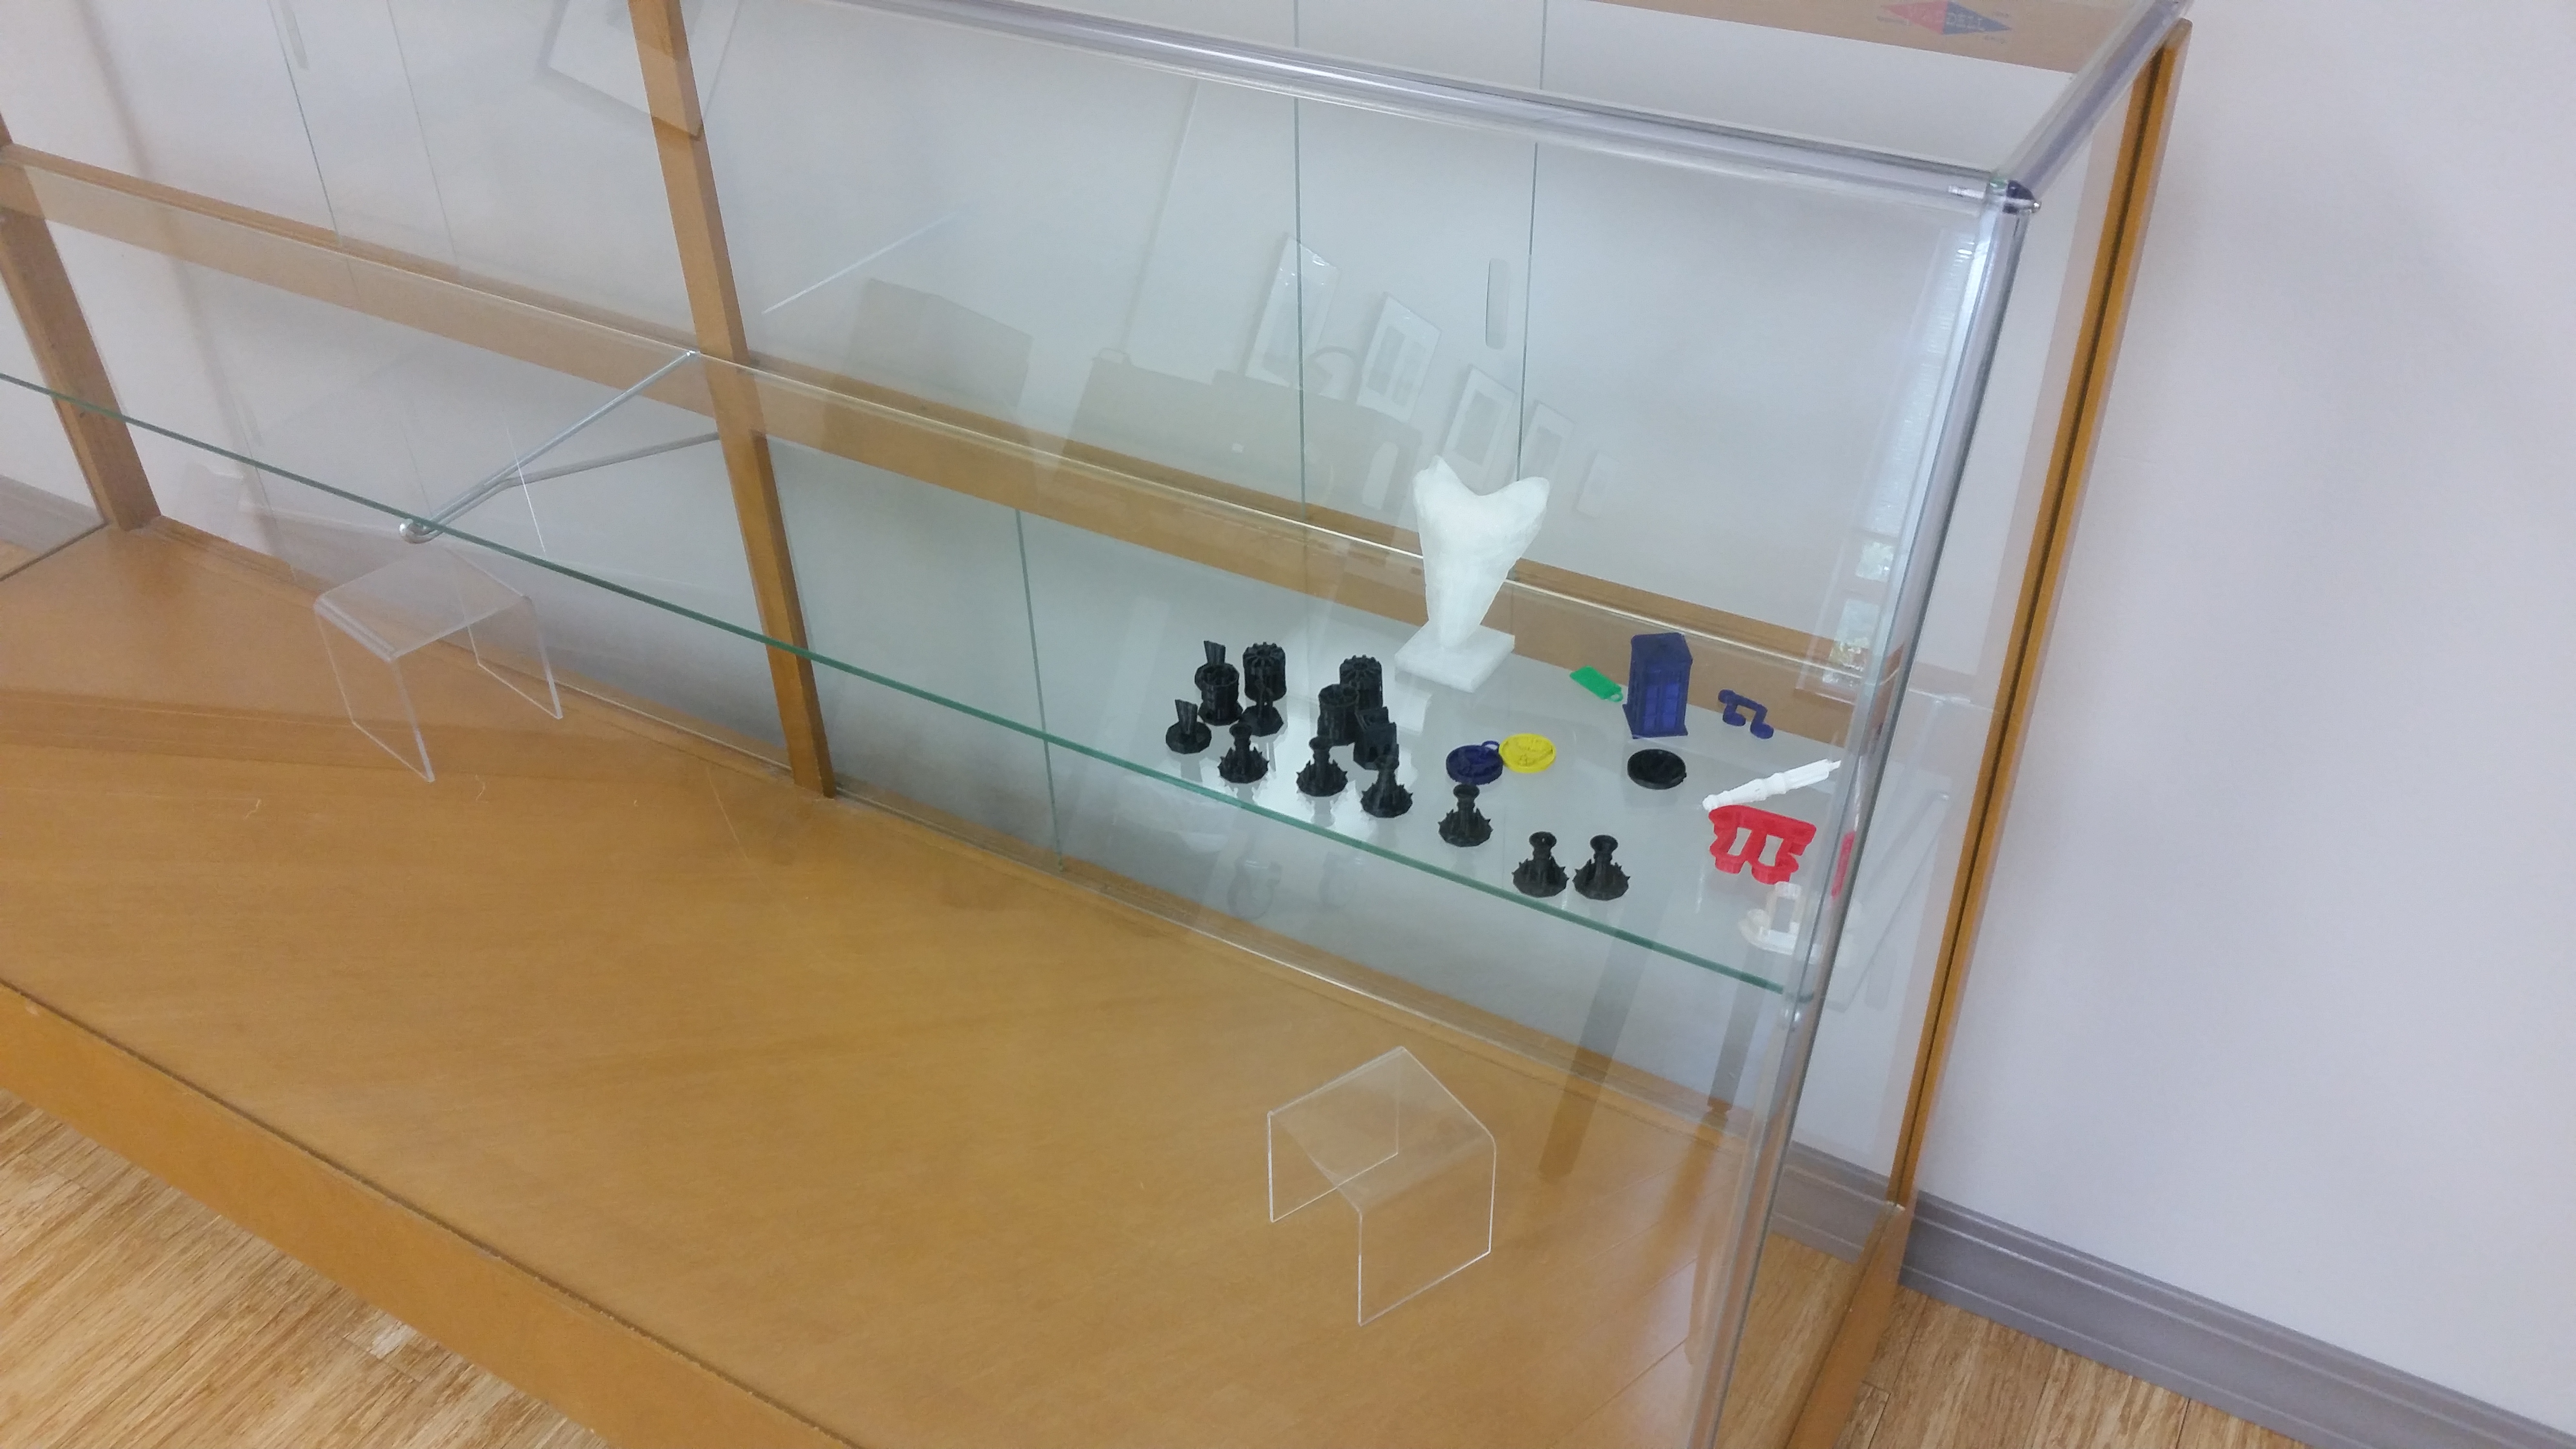 3-D printer display case at USAO Nash Library